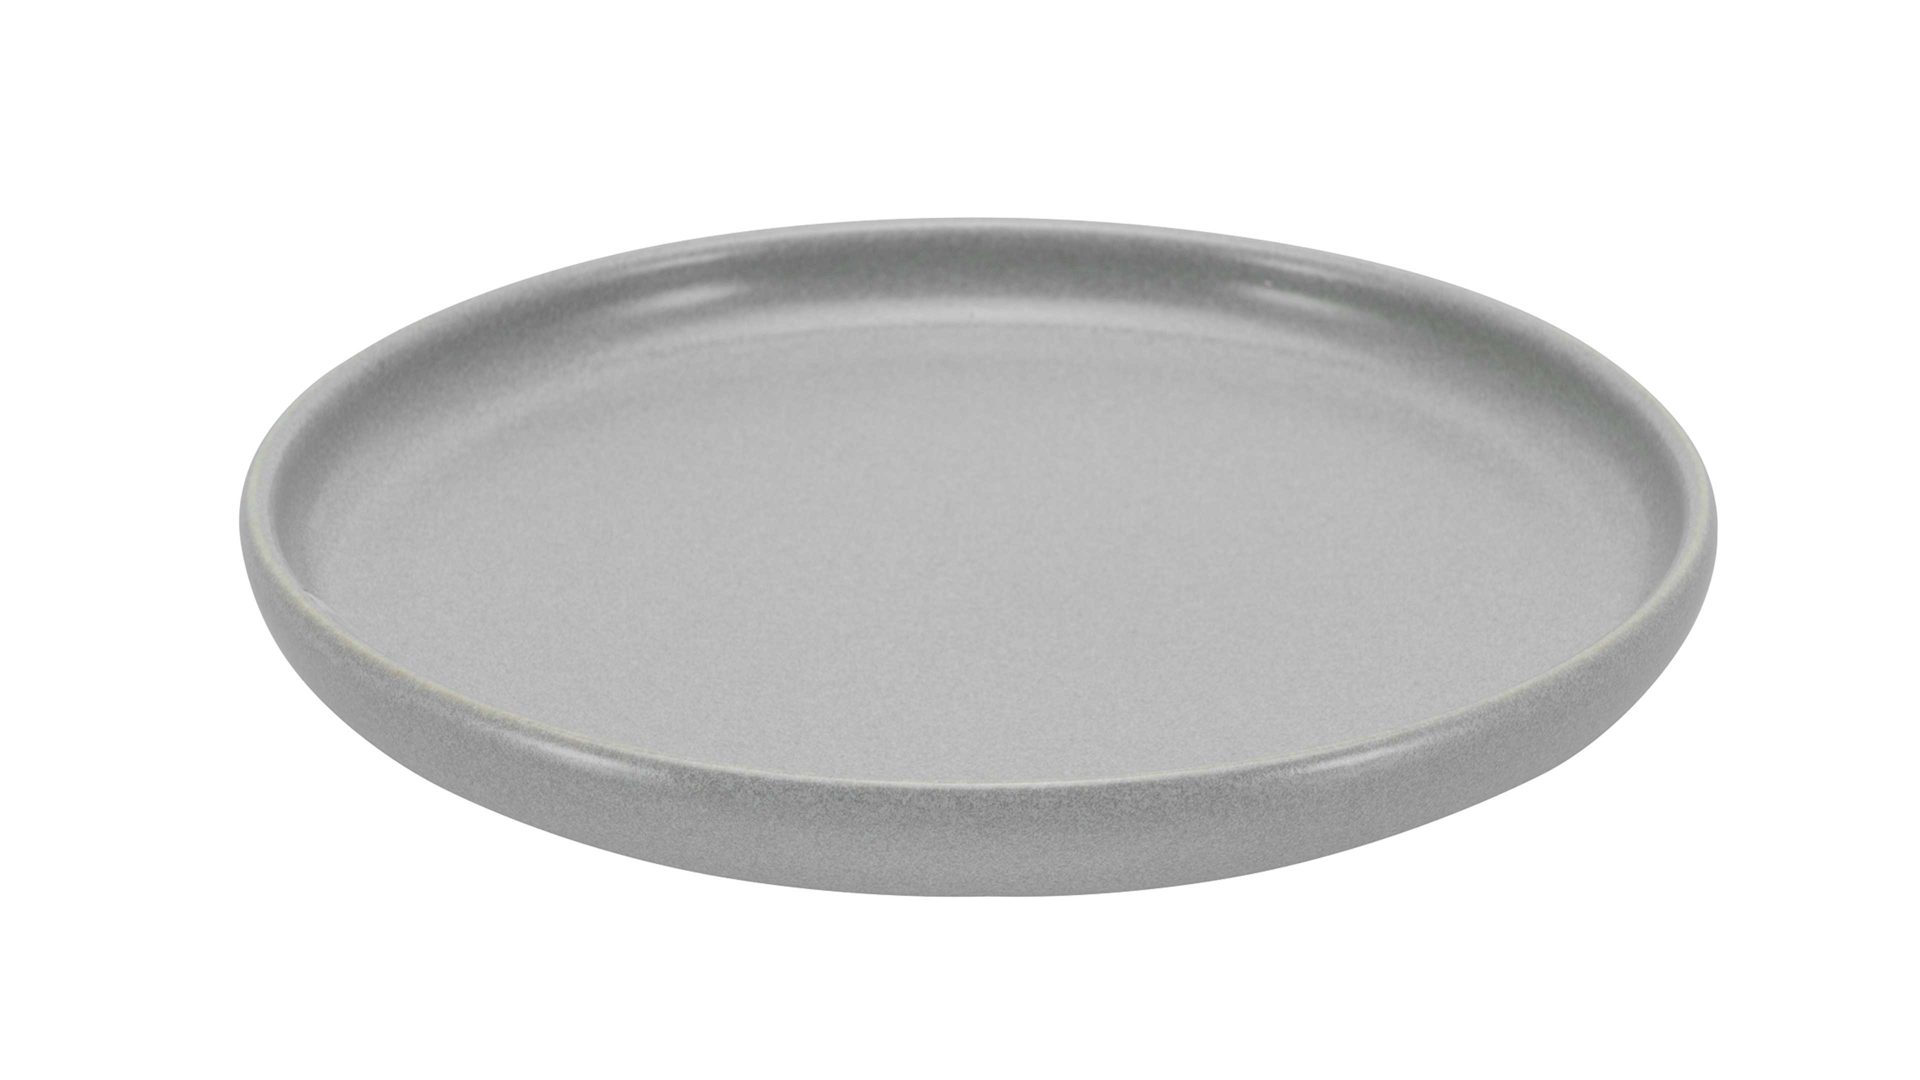 Kuchen- / Frühstücks- / Dessertteller Creatable aus Keramik in Grau CREATABLE Uno – Brotteller graues Steinzeug – Durchmesser ca. 18 cm